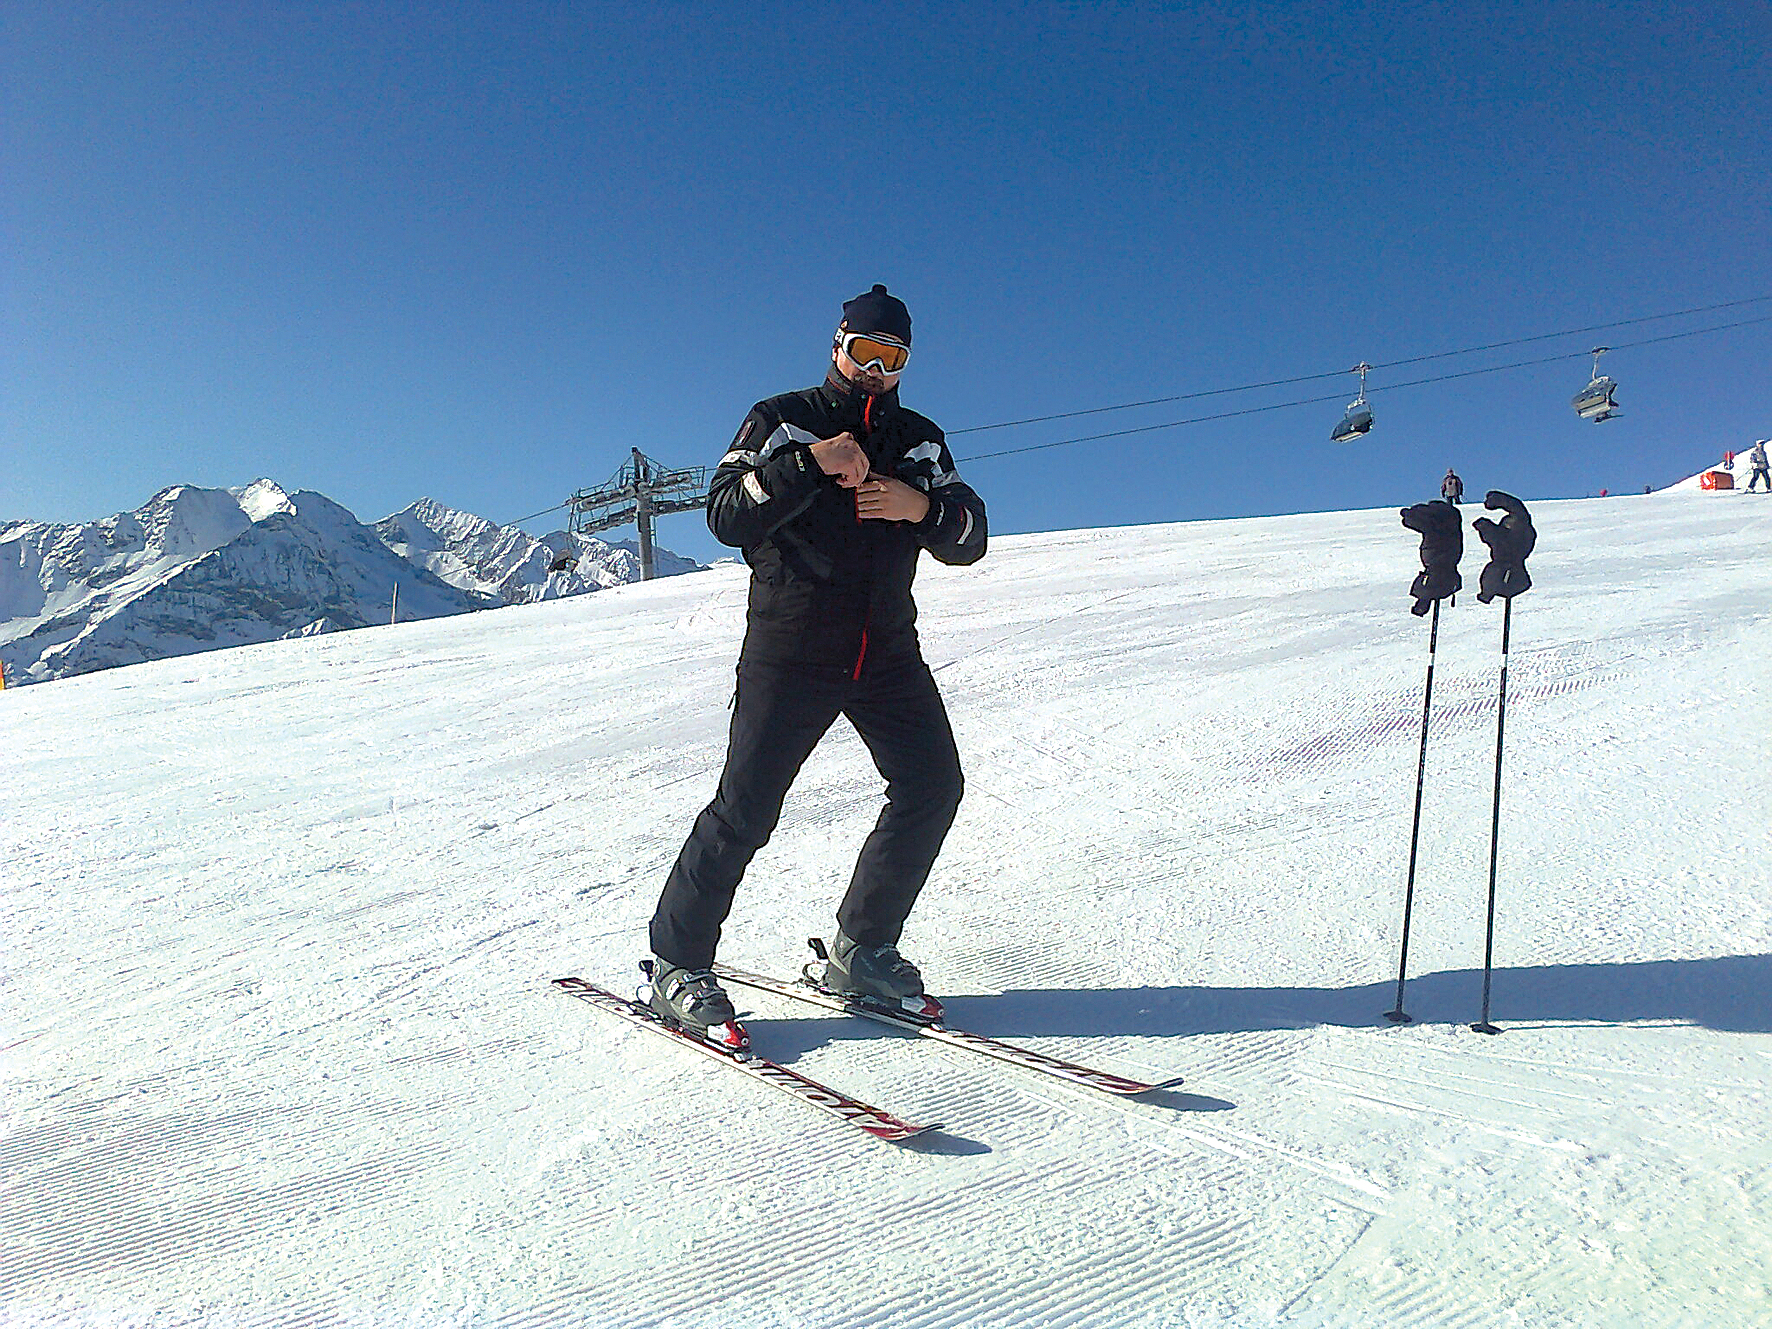 Šiliņu ģimenes hobijs ir slēpošana.  Ziemās ar sievu Marutu Viesturs brauc  uz tālajiem kalniem – vislabāk uz Austriju  un Itāliju.